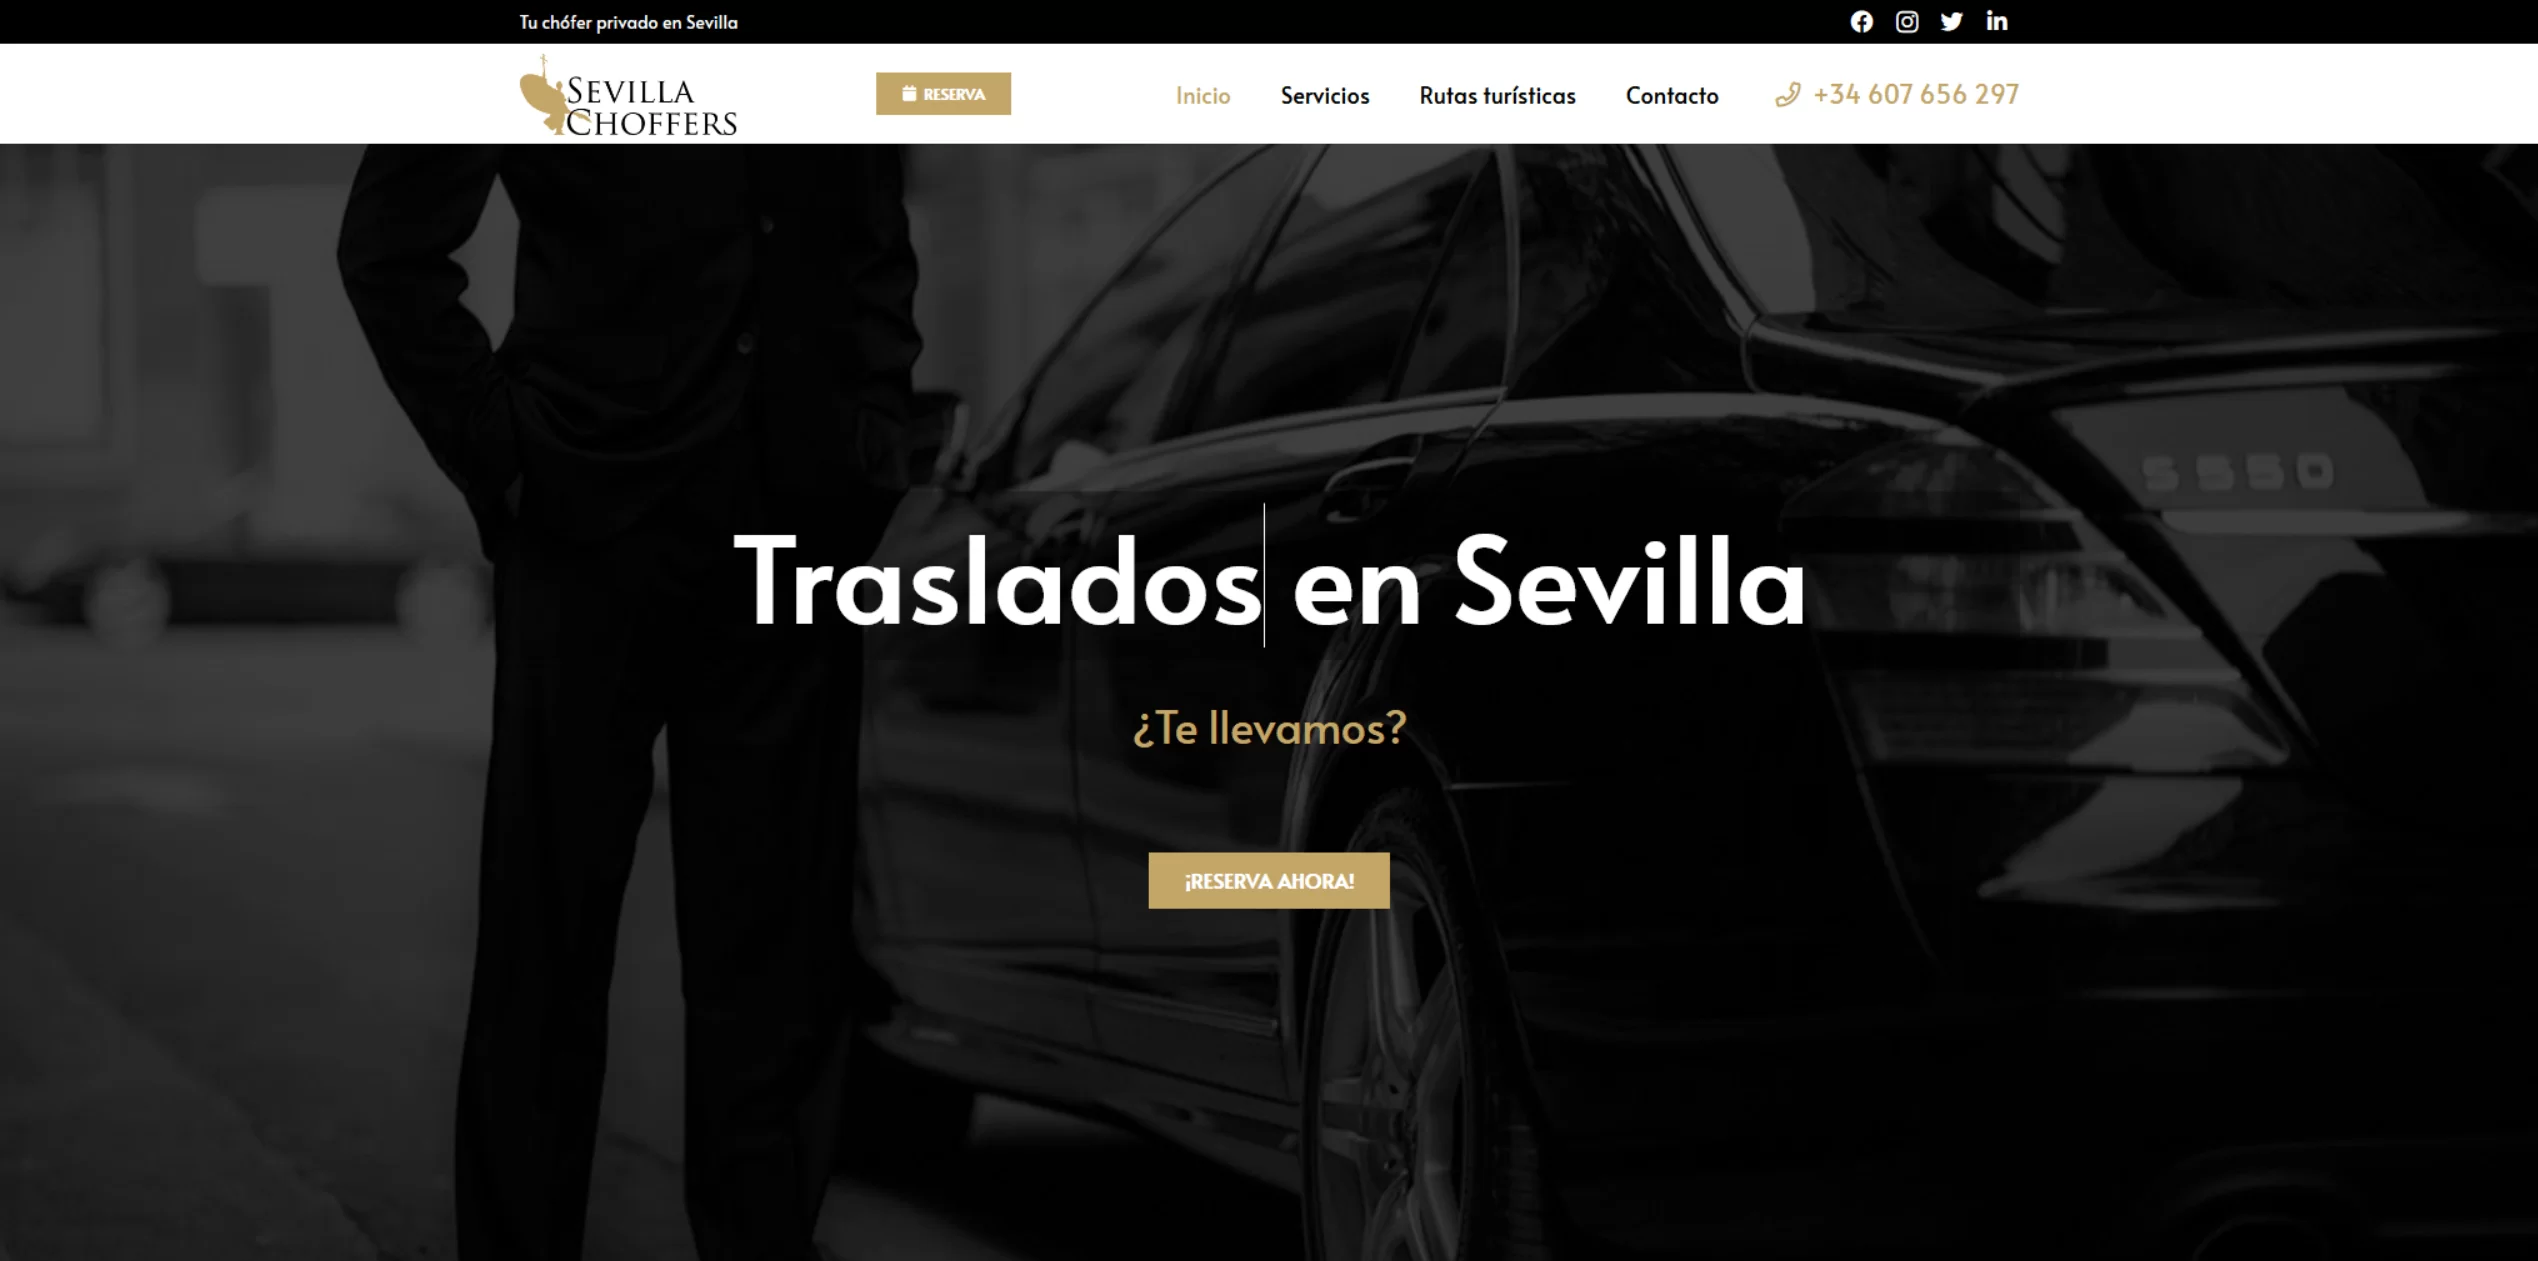 Taxi en Sevilla - Sevilla Choffers